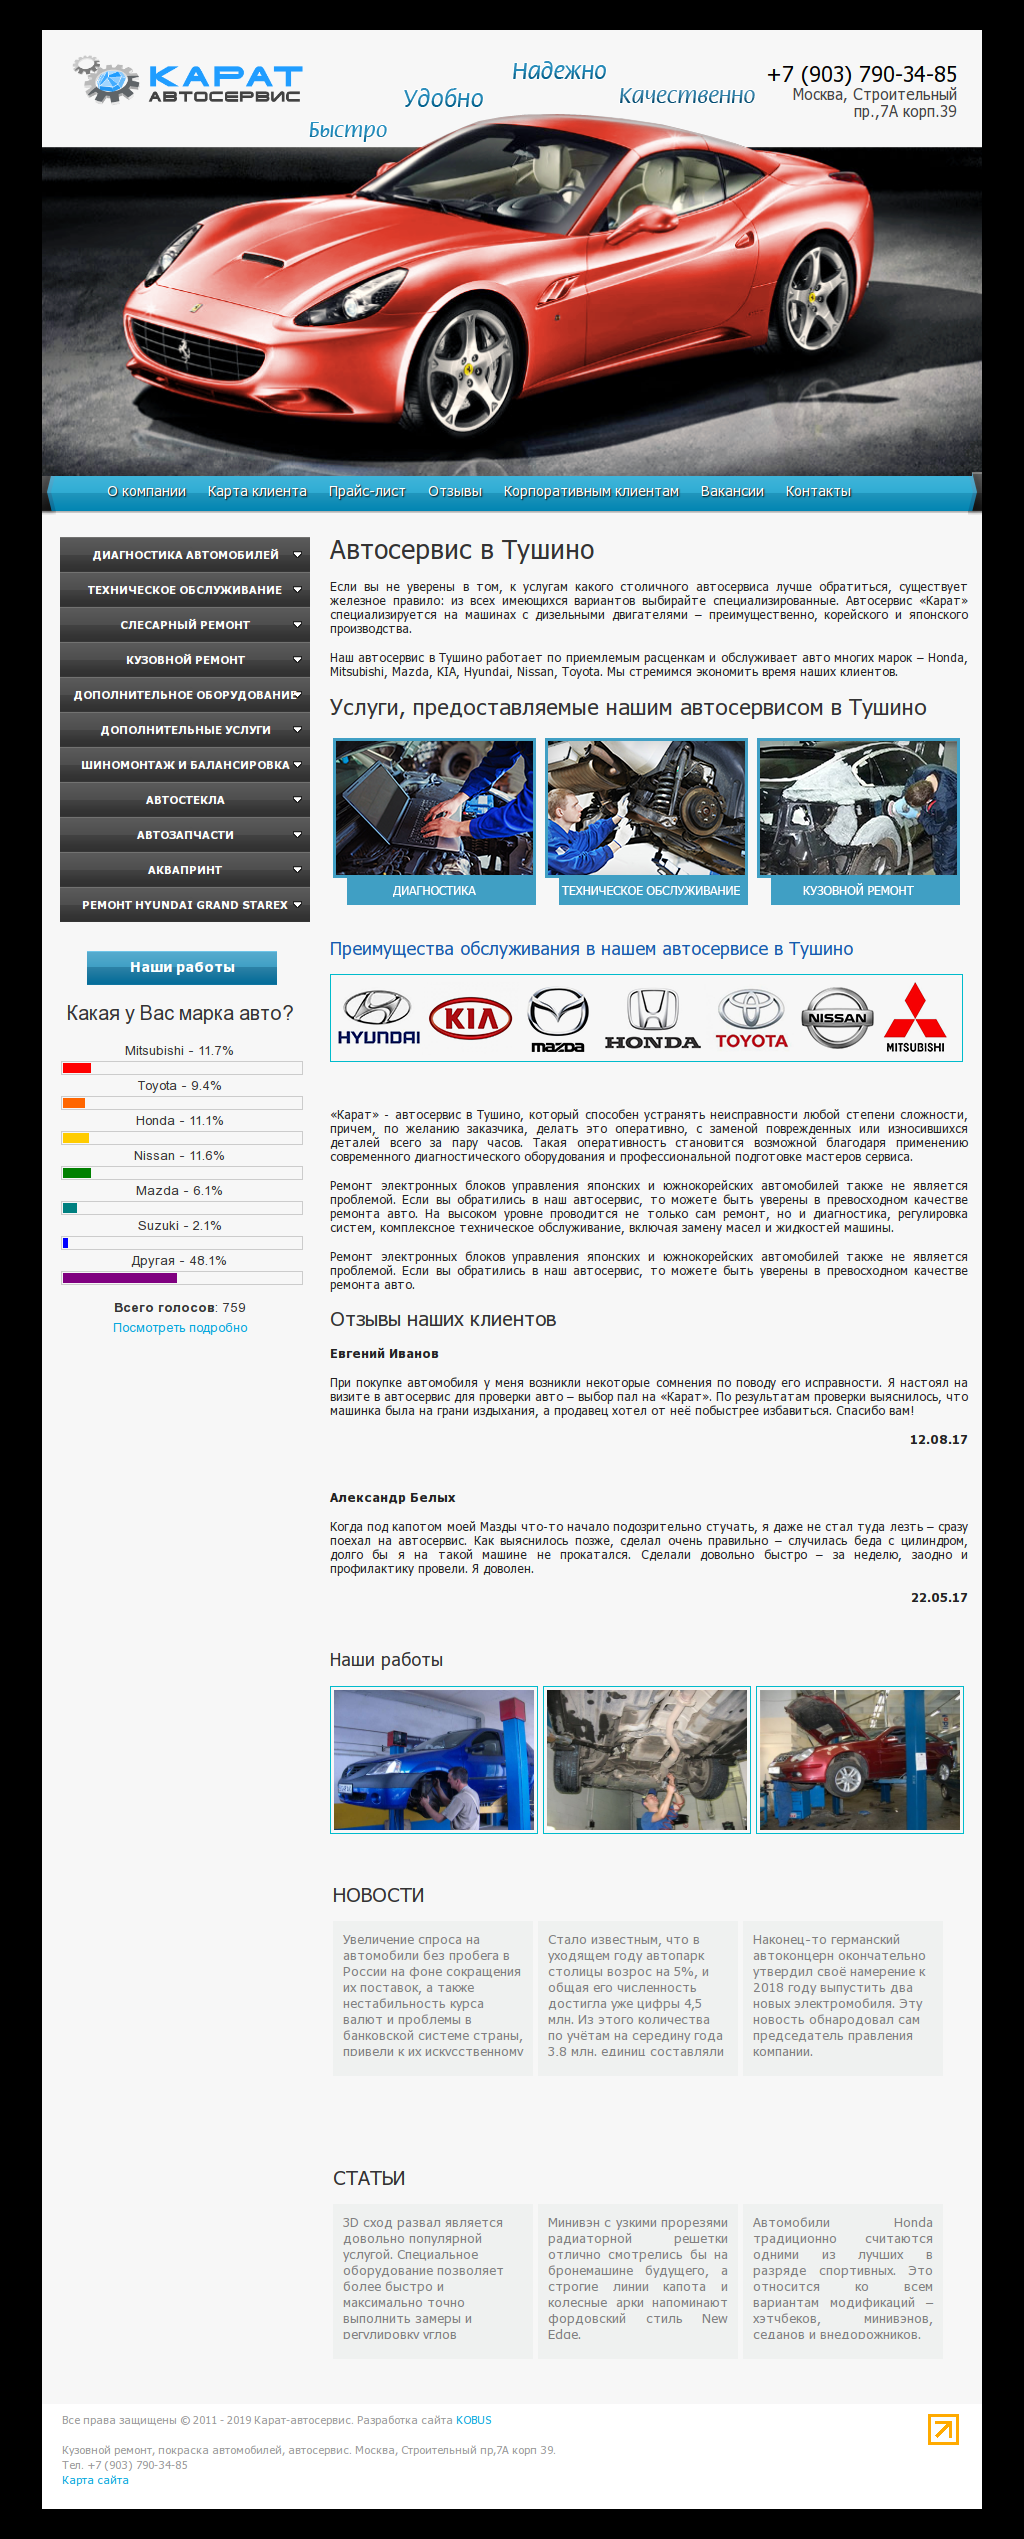 Web Design of Auto Repair Center KARAT Car Service